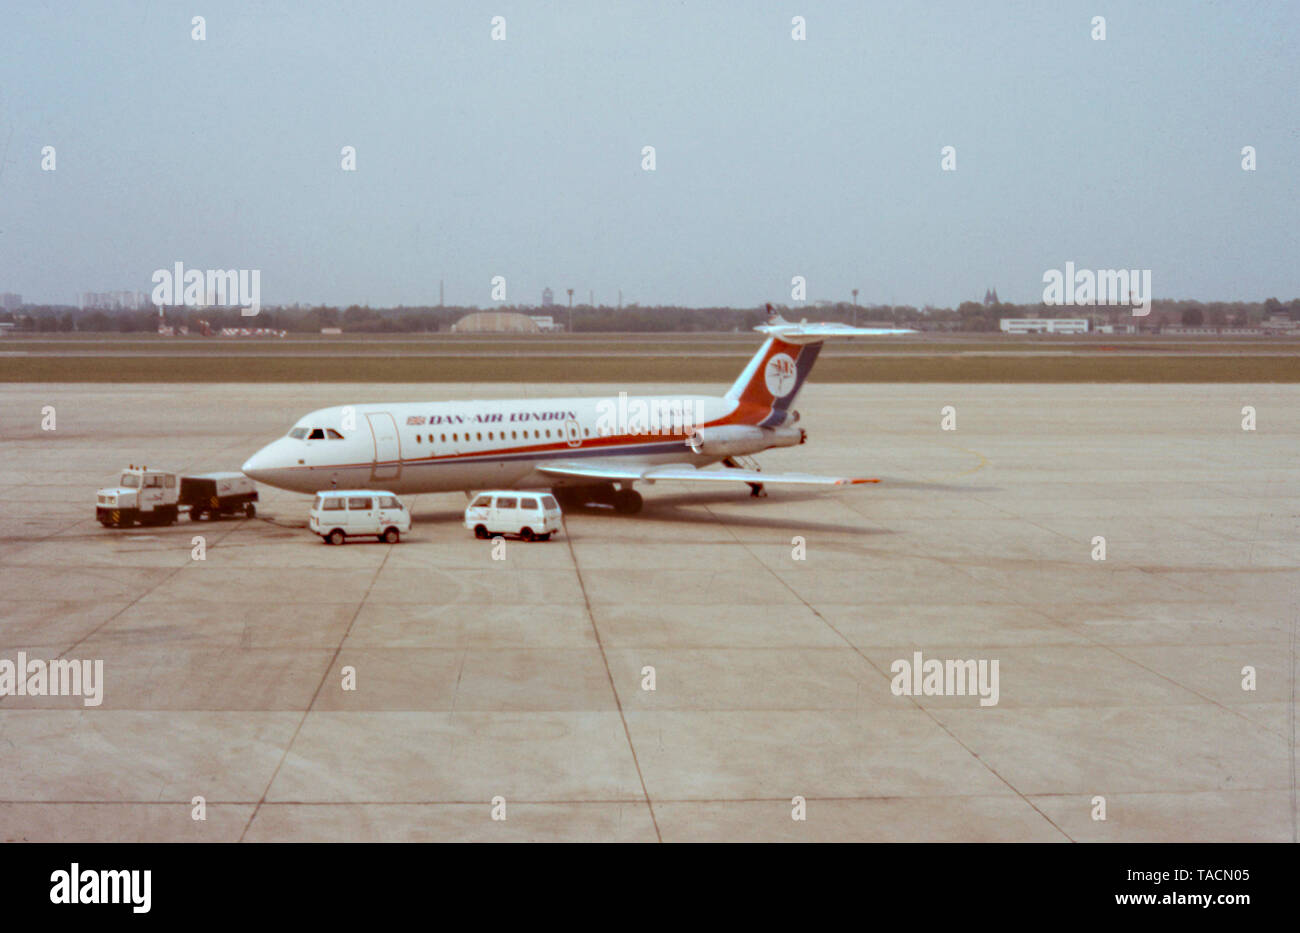 Dan-Air London BAC 1-11-414p. ex. en cours d'entretien d'aéronefs sur le tarmac de l'aéroport de Berlin Tegel (TXL) ca.1985 , Berlin, Allemagne, Europe - image d'archive Banque D'Images